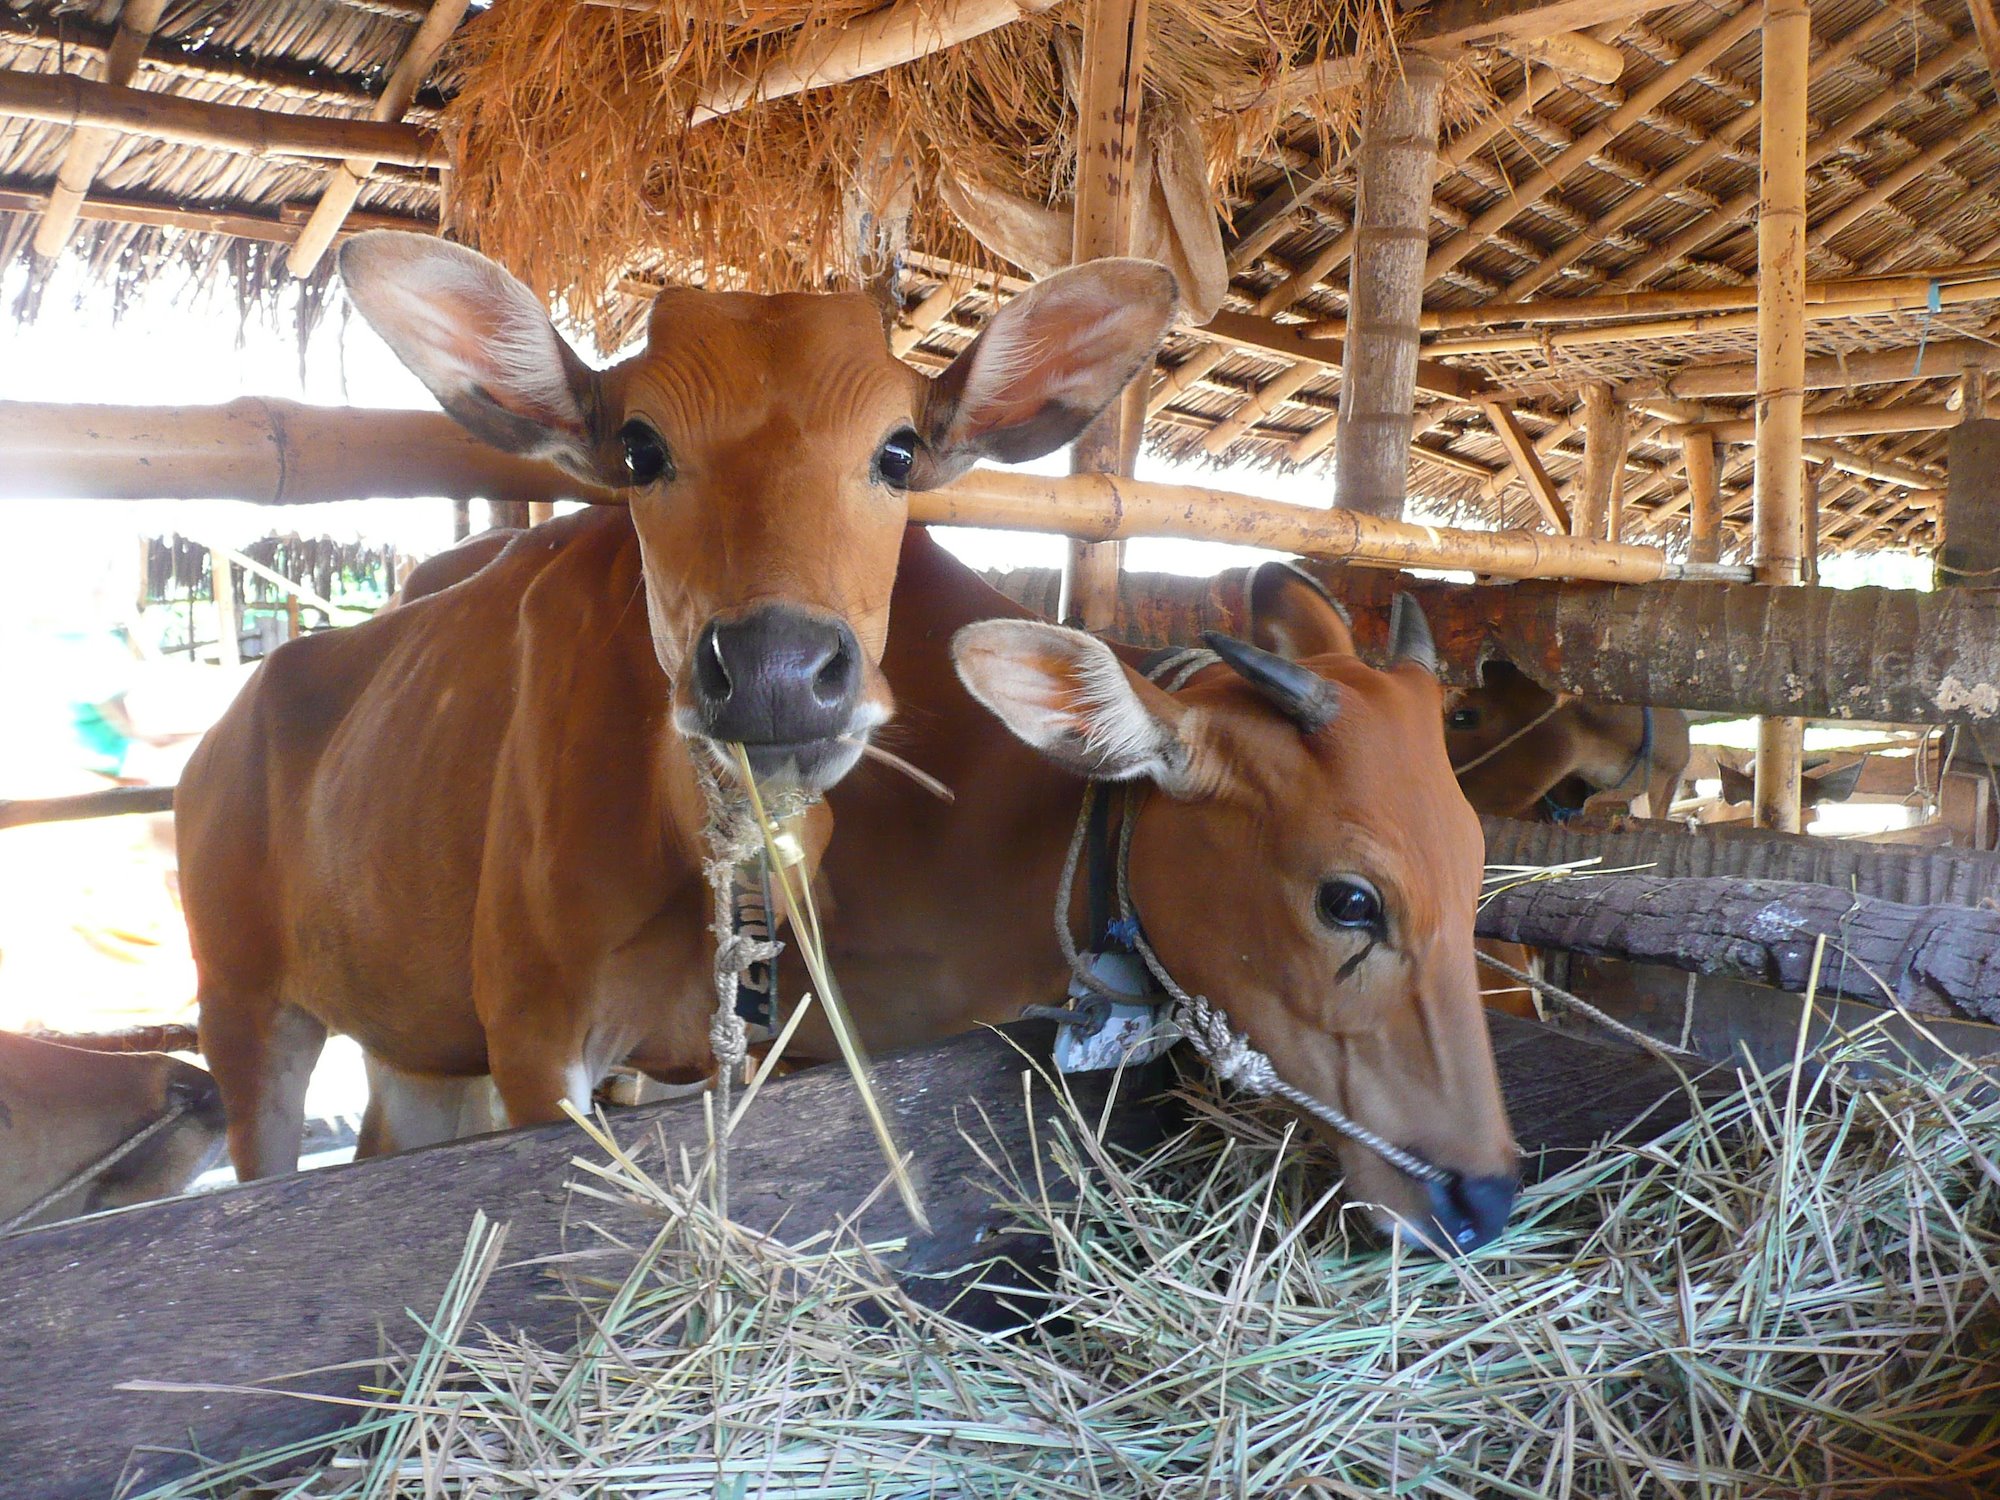 Two cows in a barn feeding on straw